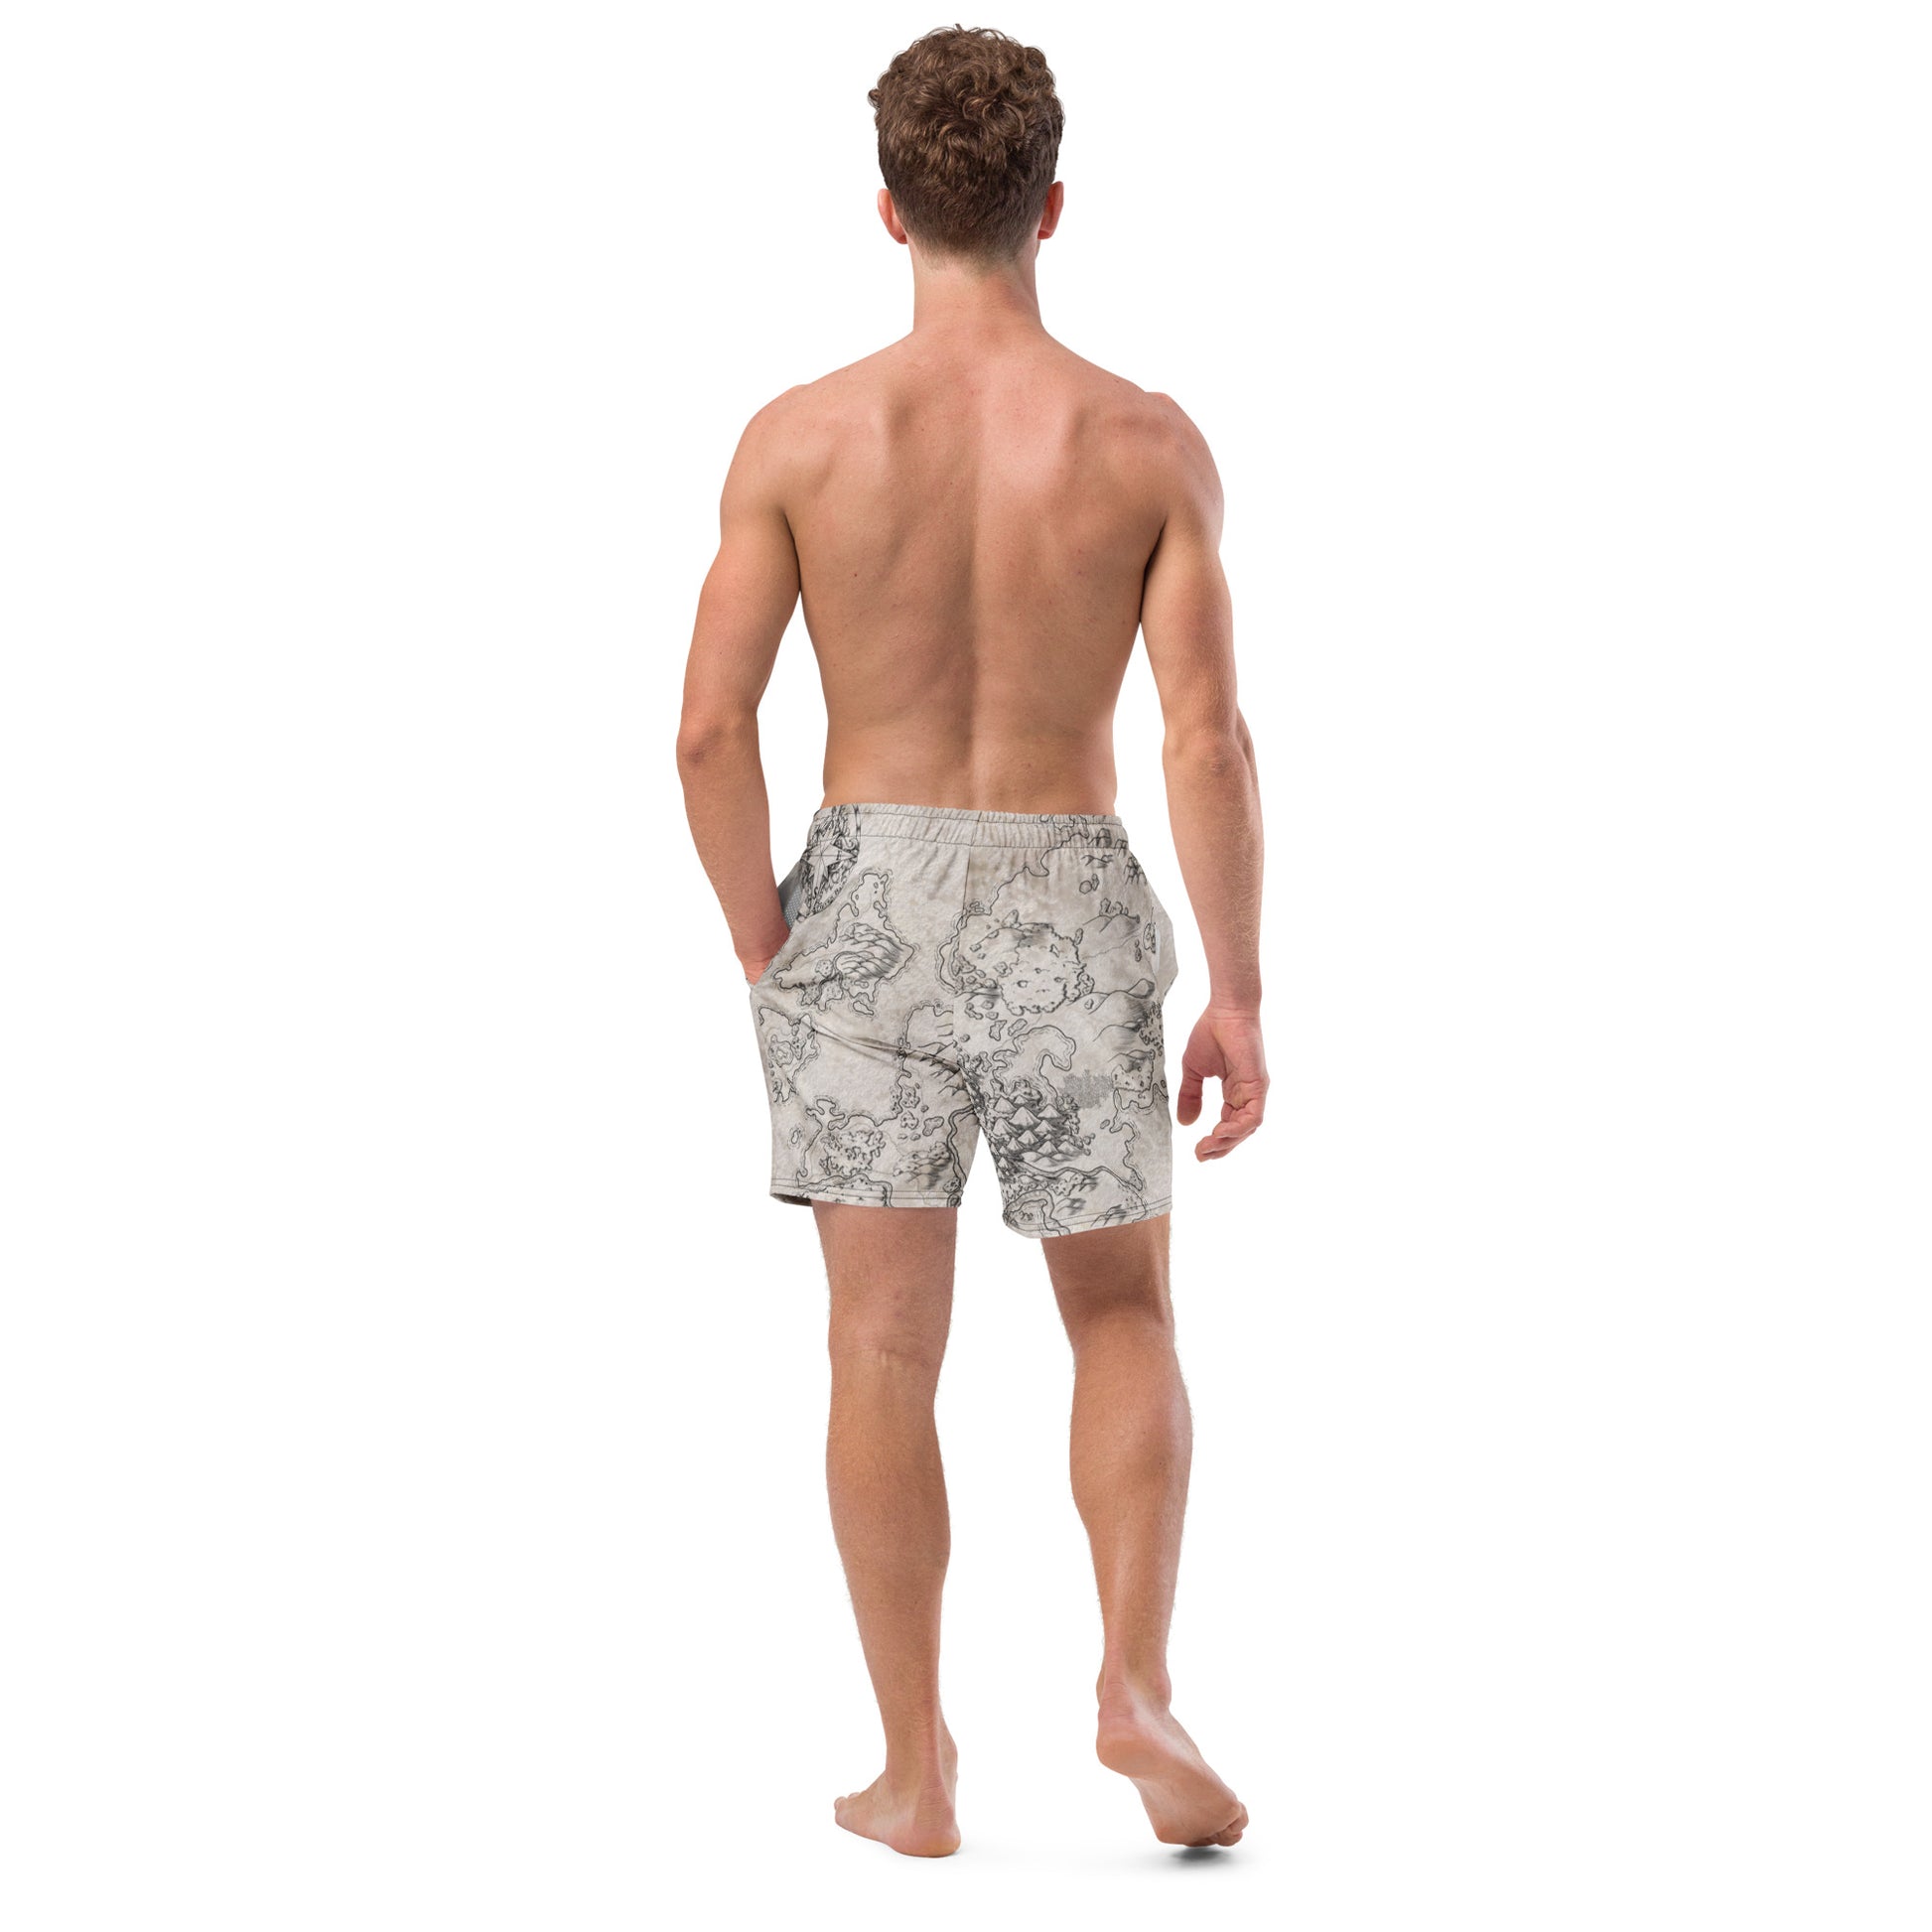 A model wears the Wallerfen swim trunks by Deven Rue, back view.